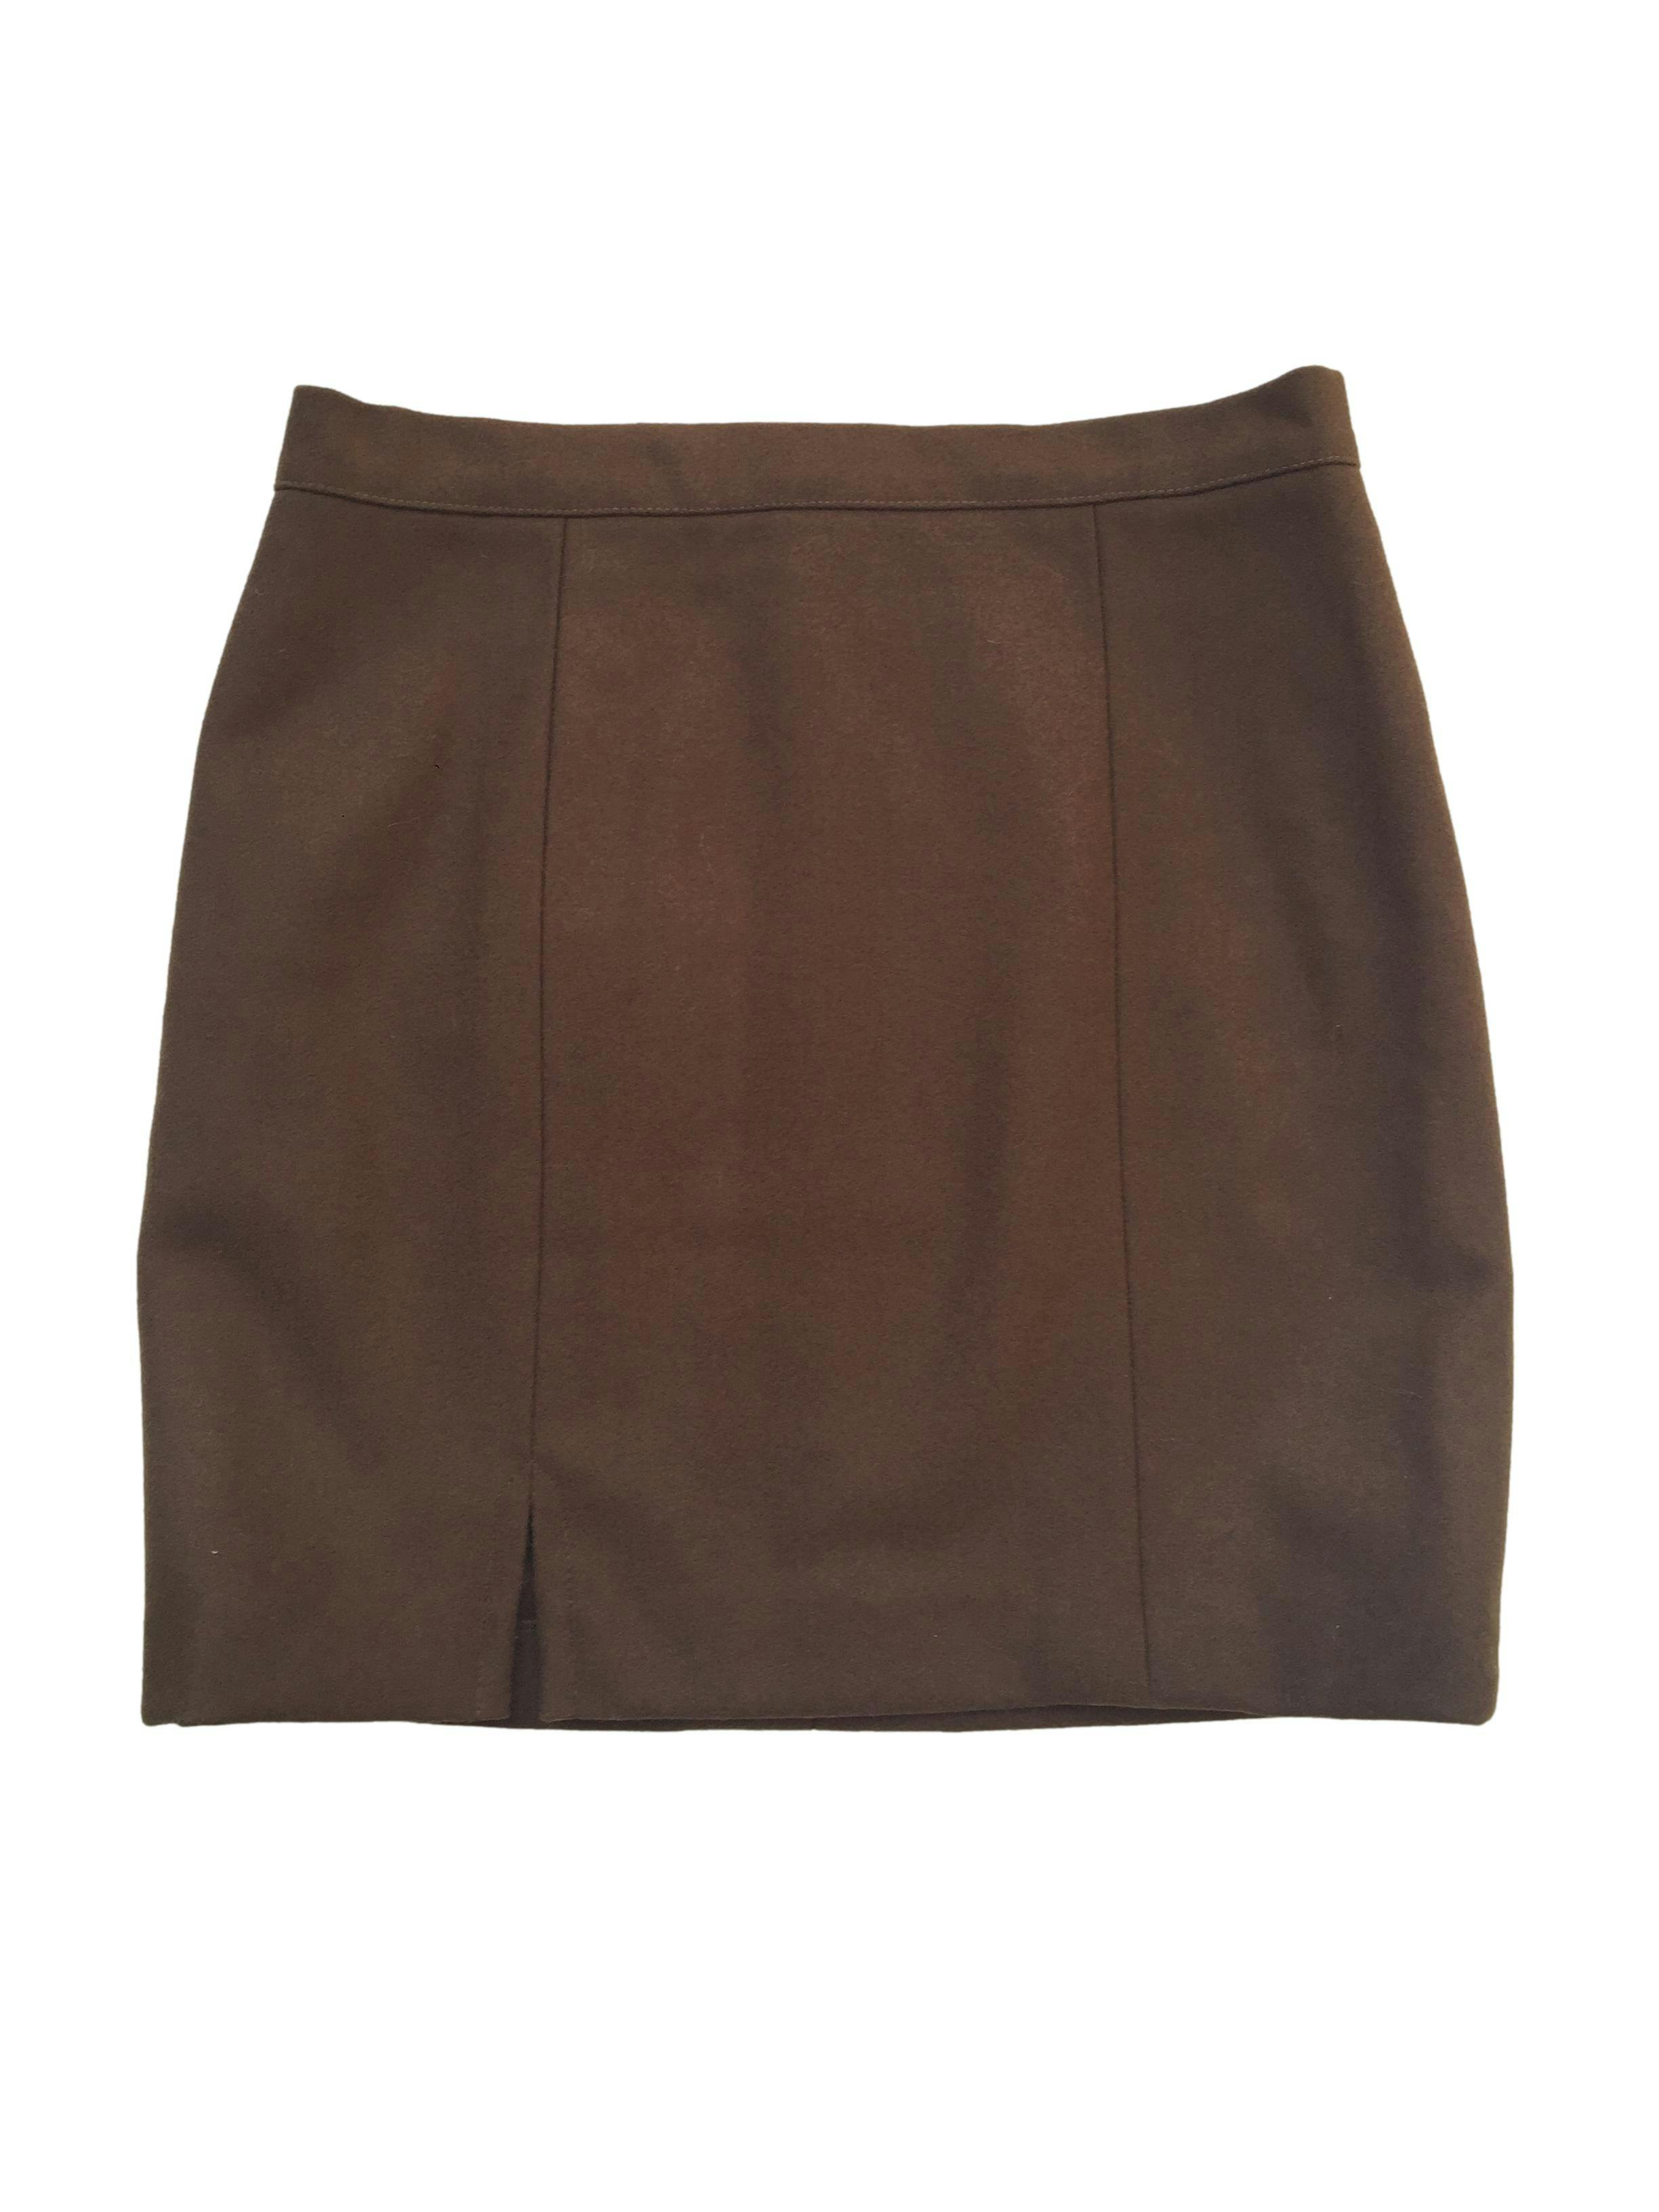 Falda mini de paño color marrón, tiene pinzas,cierre posterior y aberturas frontales. Cintura 78cm, Largo 45cm.